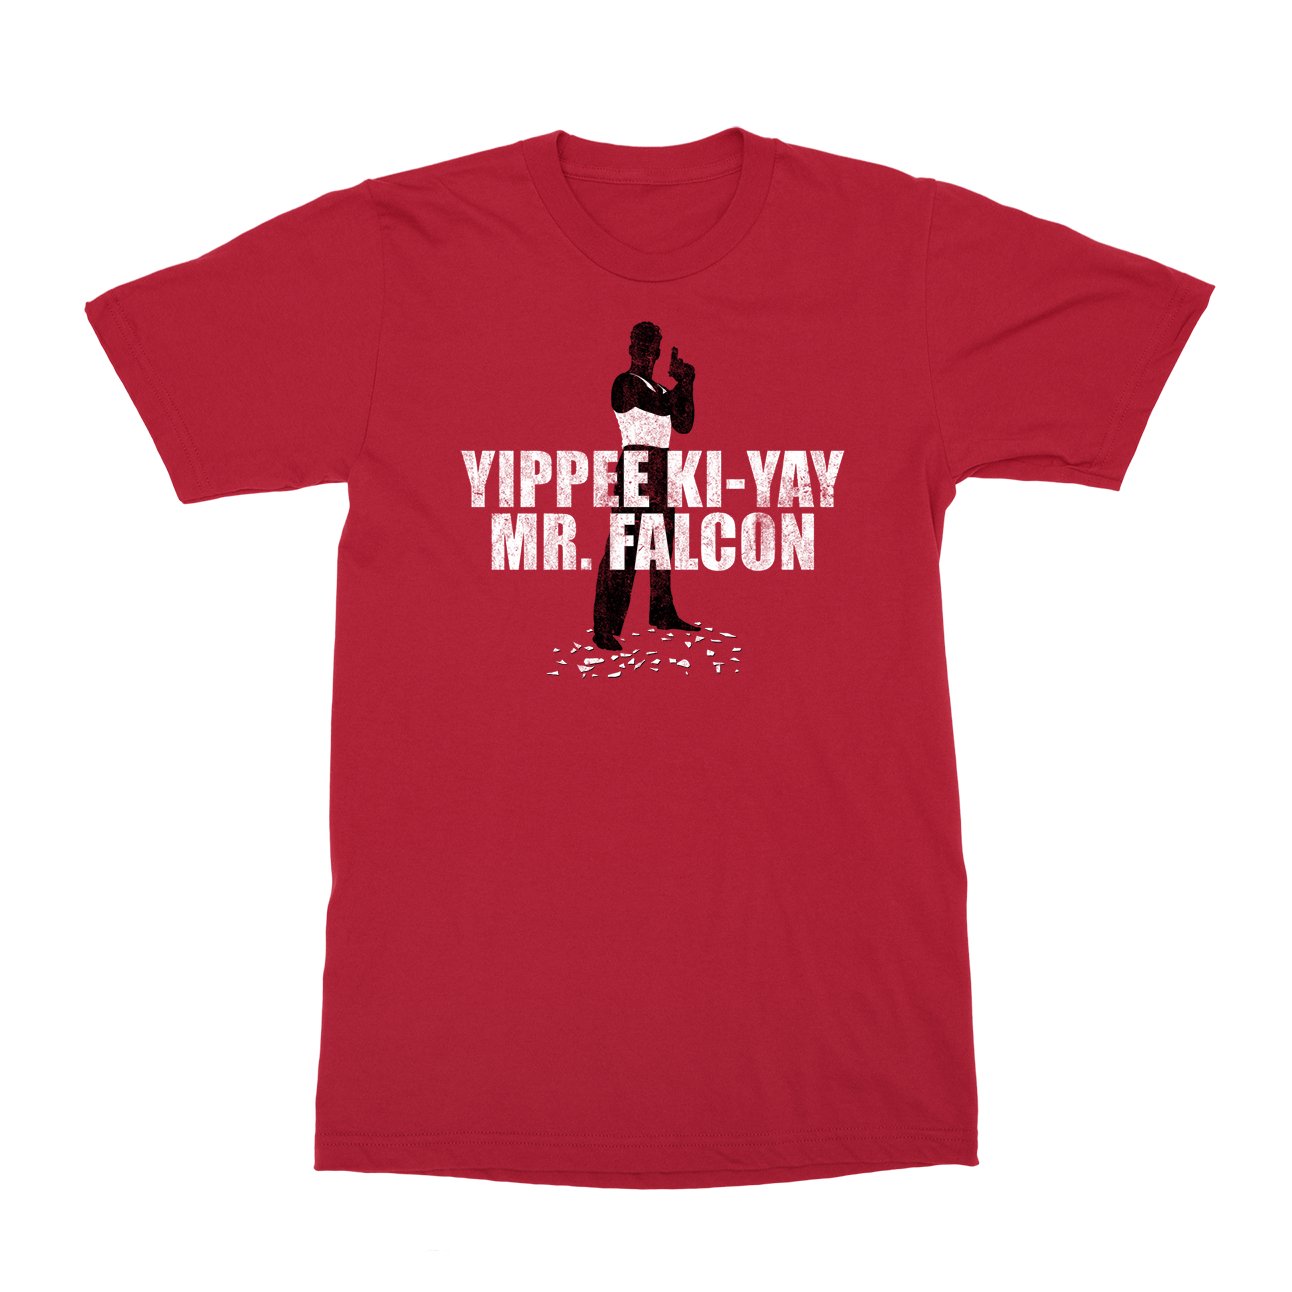 Yippee KI-Yay Mr. Falcon T-Shirt - Black Cat MFG -